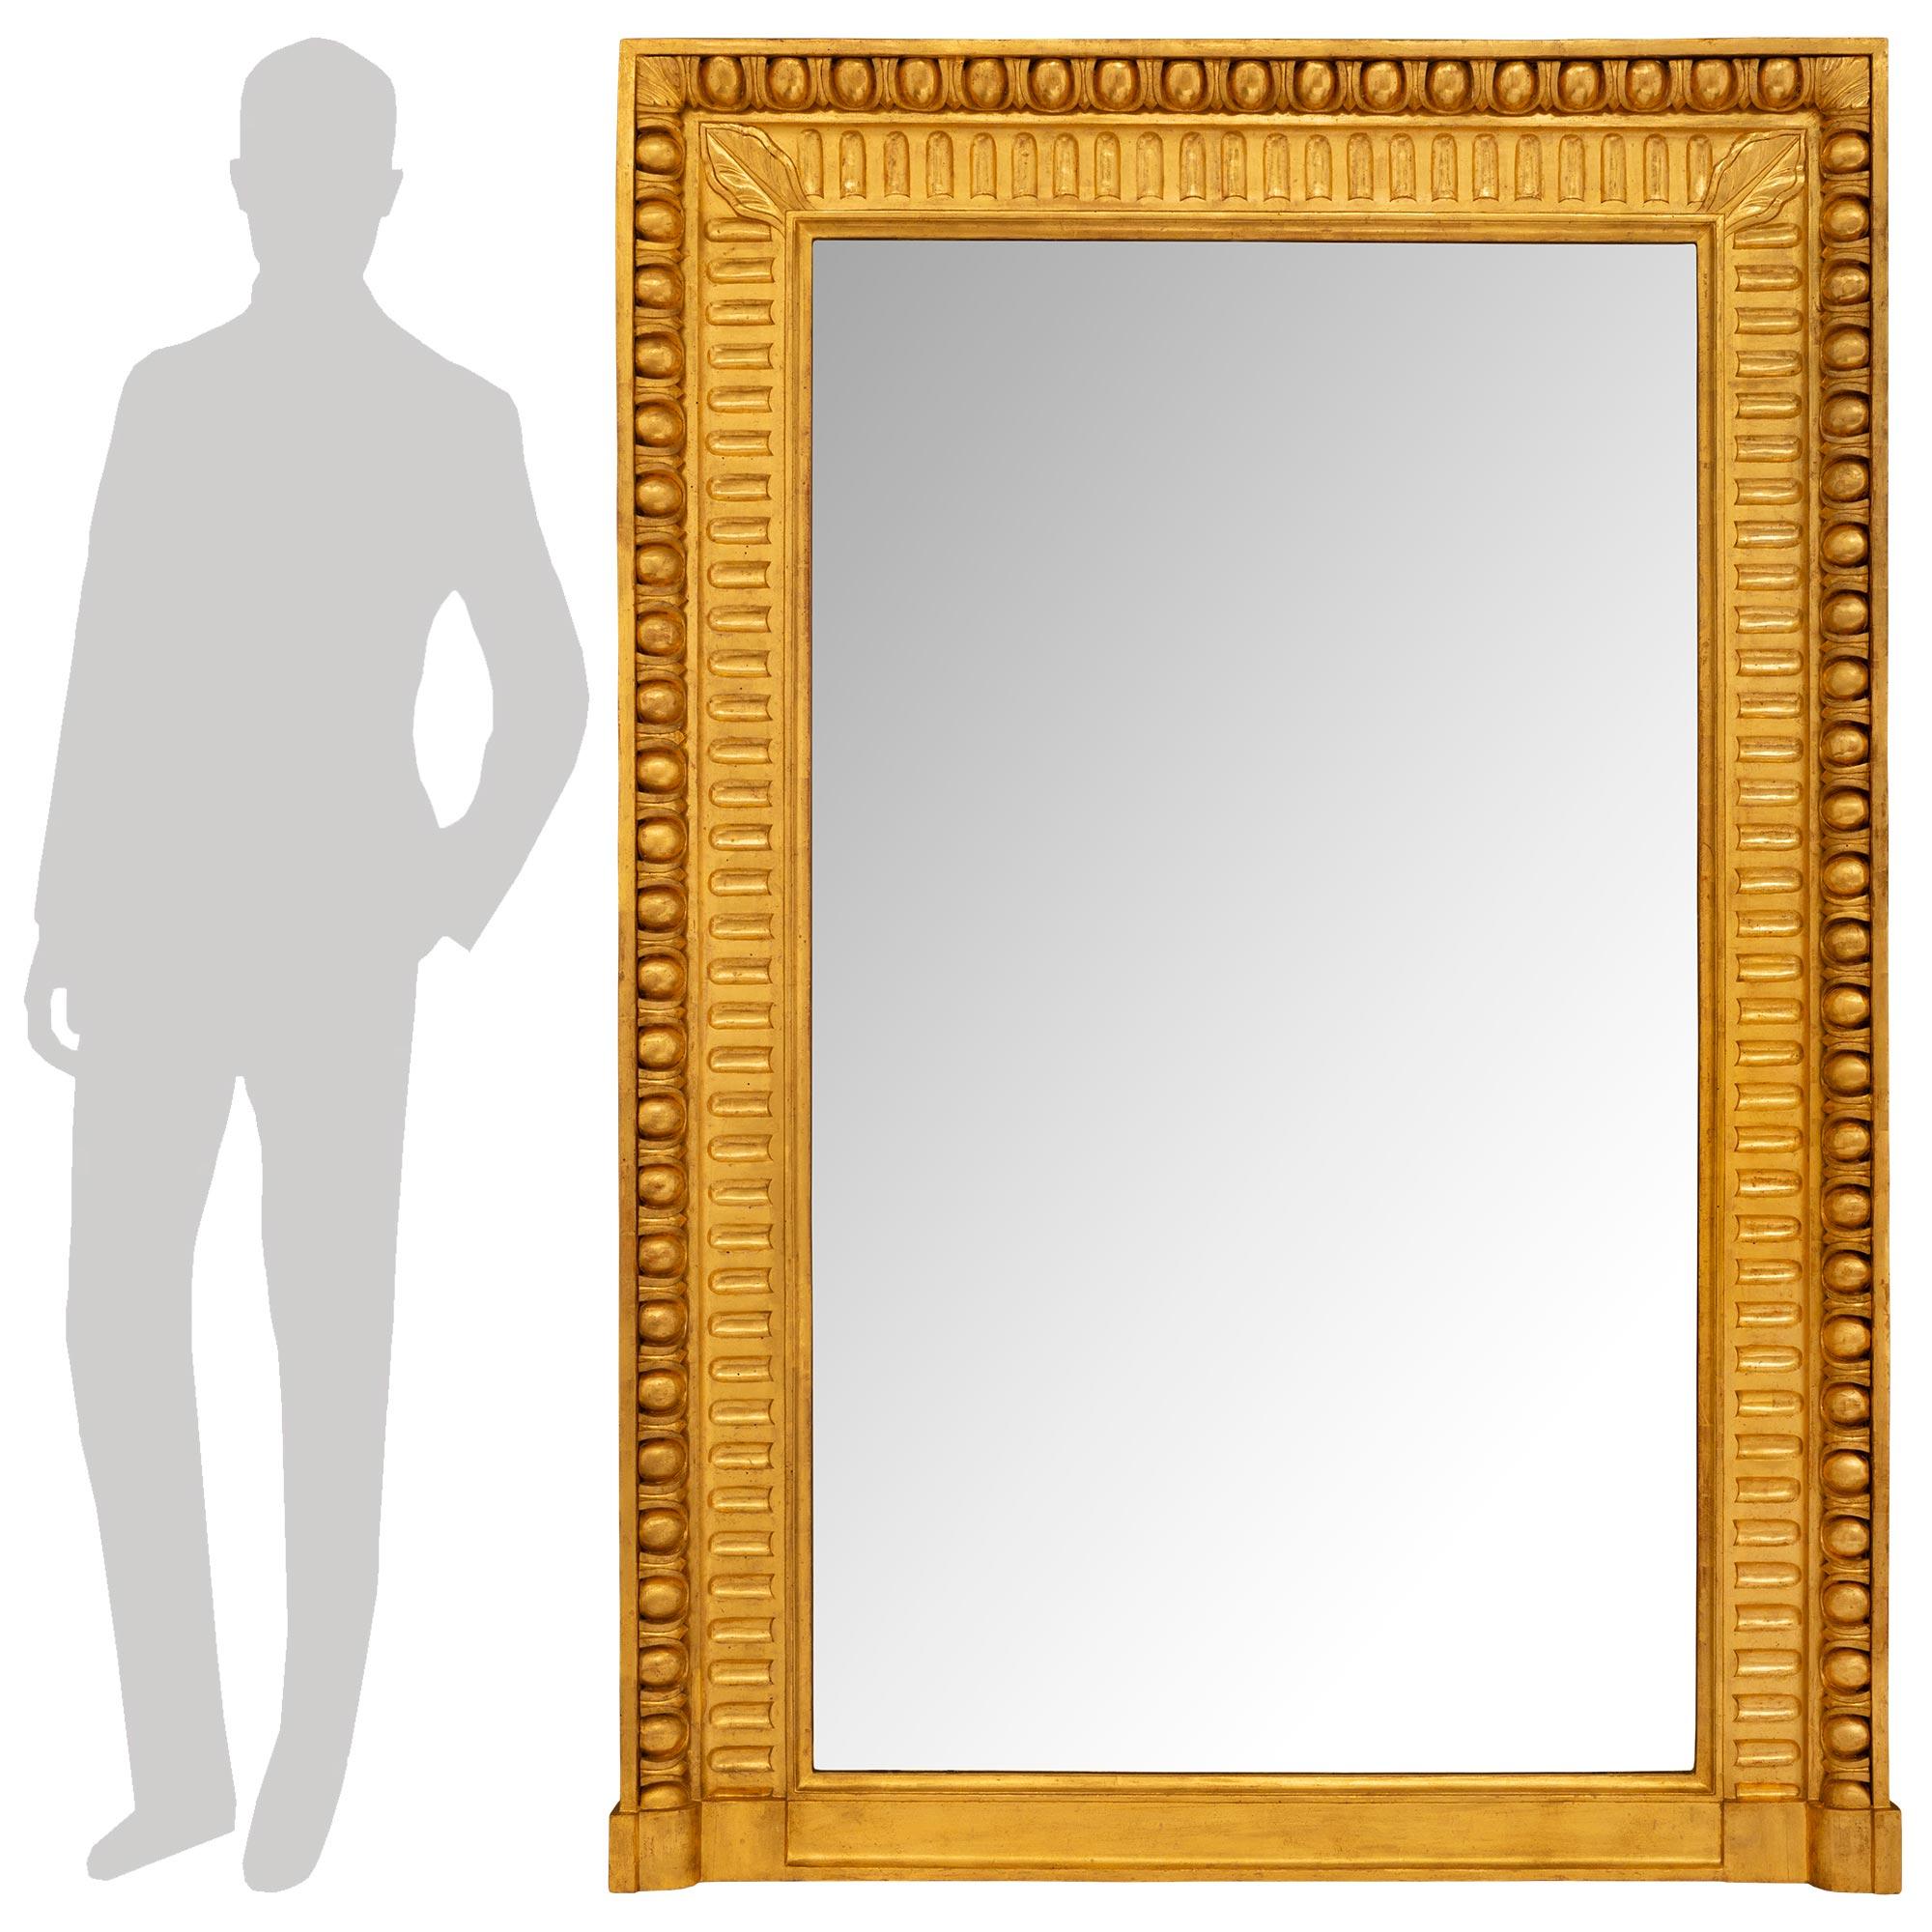 Belle paire de miroirs rectangulaires en bois doré de style Louis XVI italien du XIXe siècle. Les plaques de miroir originales sont encadrées d'un impressionnant motif cannelé à l'intérieur et d'une bordure extérieure en forme d'œuf et de dard. Les